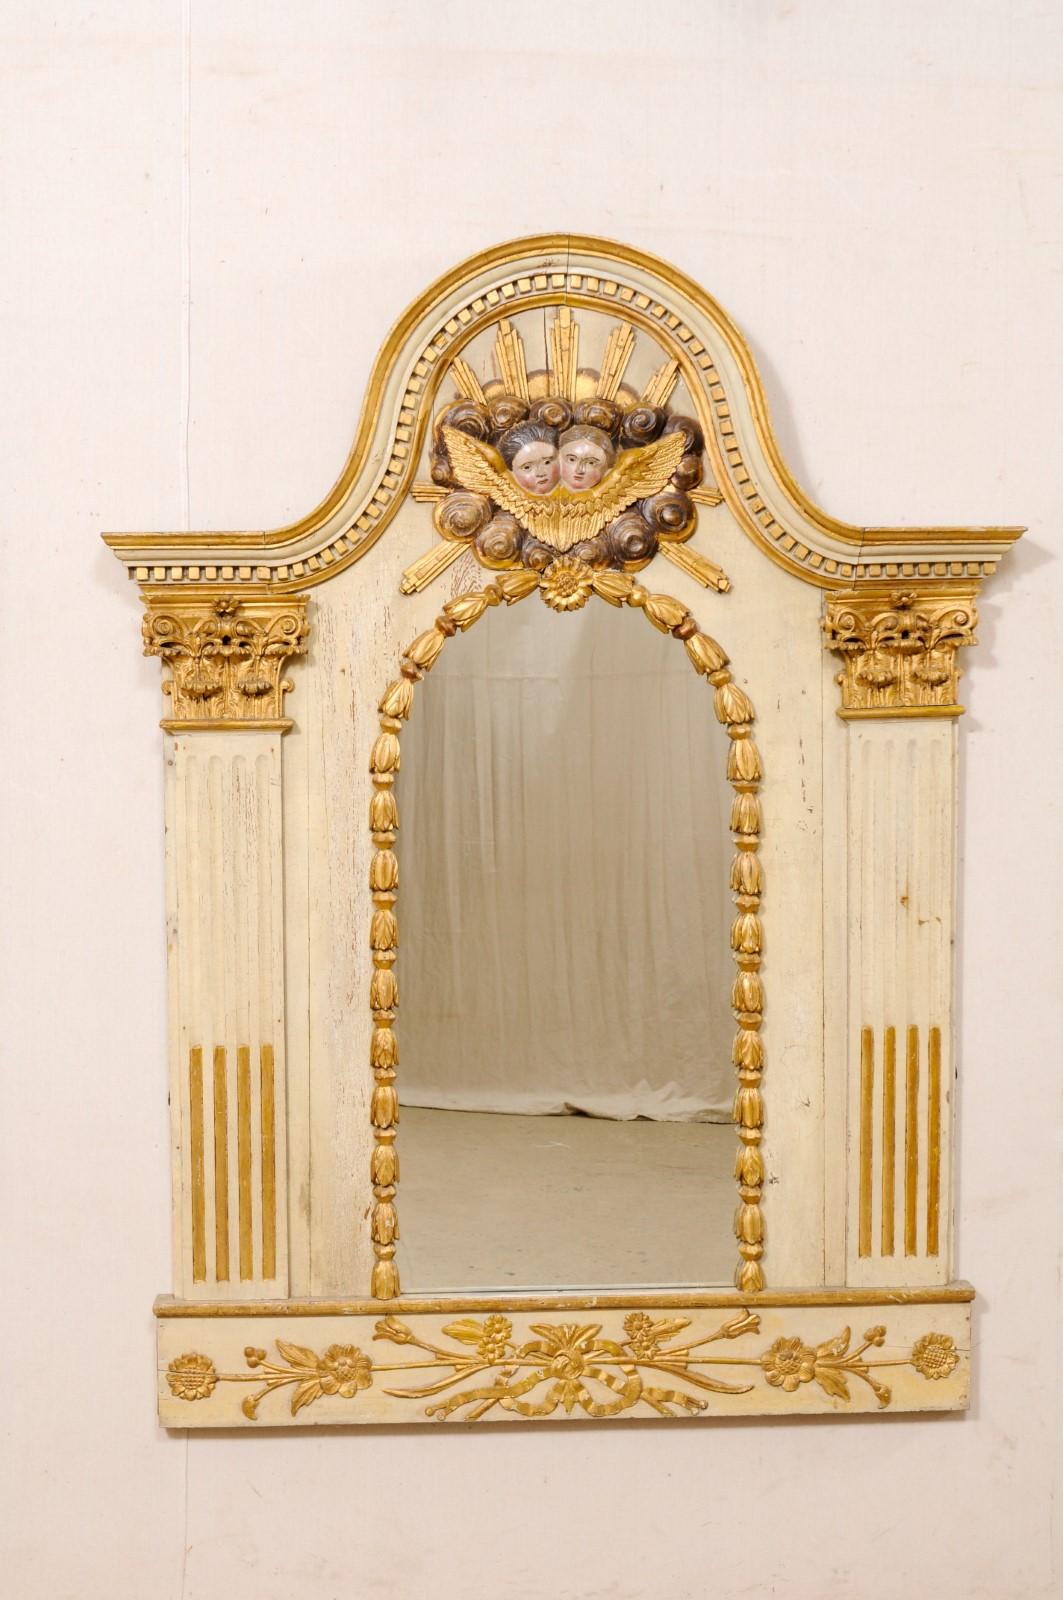 Un miroir français avec des sculptures fabuleuses et la peinture et la dorure d'origine du tournant du 18ème et 19ème siècle. Ce miroir ancien de France présente un fronton en forme d'arc exagéré avec une moulure dentelée sous la garniture